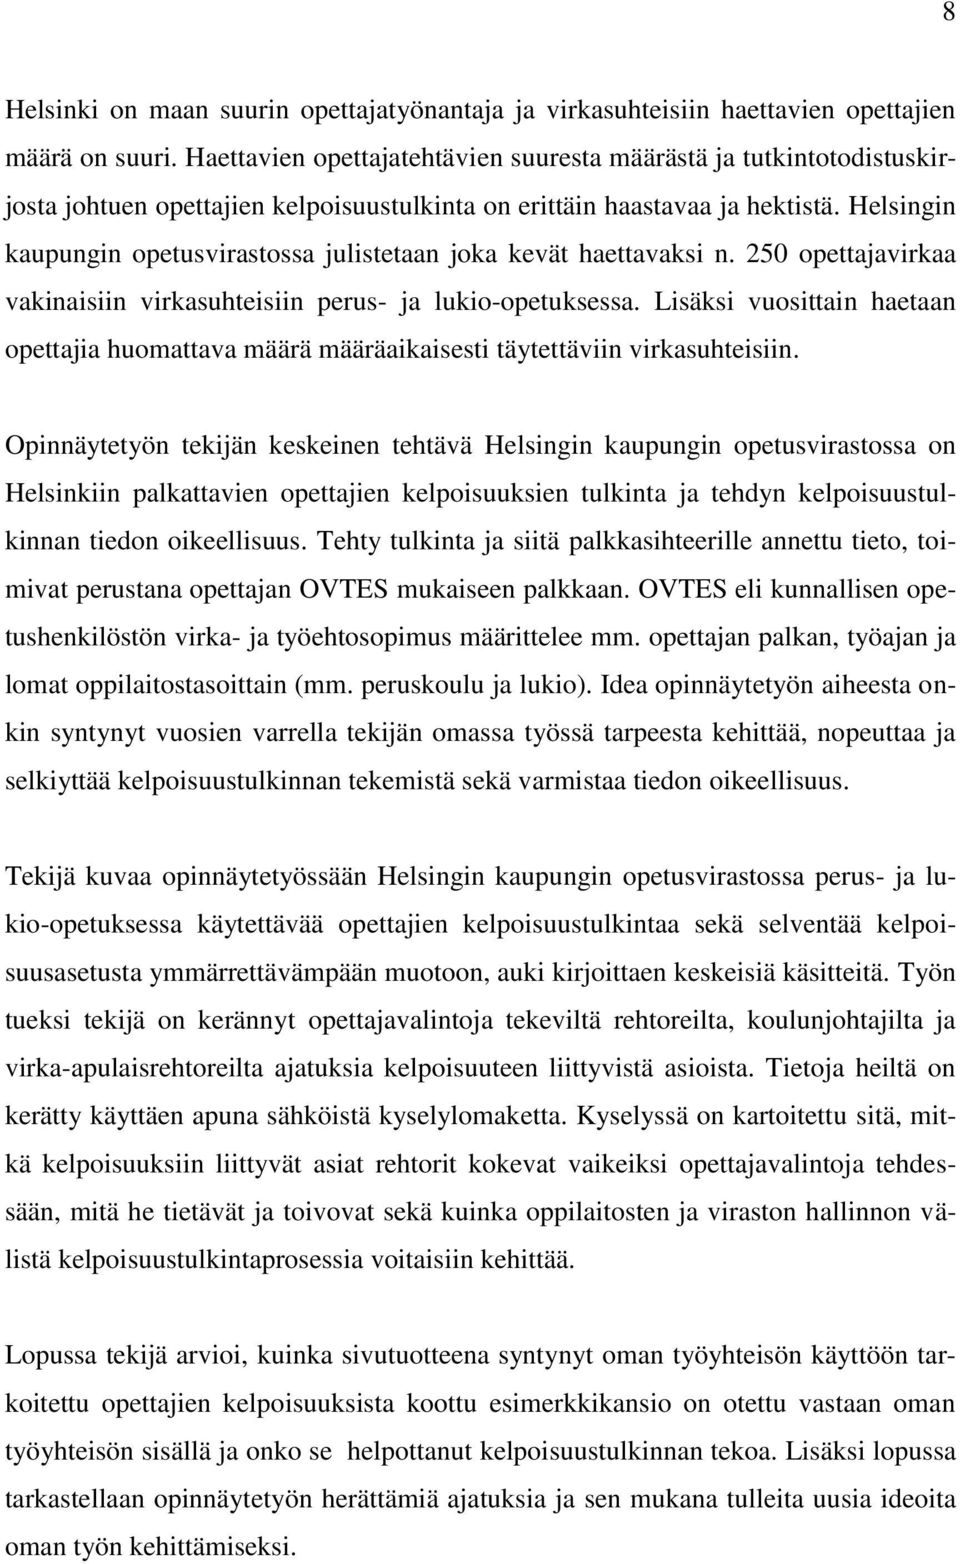 Helsingin kaupungin opetusvirastossa julistetaan joka kevät haettavaksi n. 250 opettajavirkaa vakinaisiin virkasuhteisiin perus- ja lukio-opetuksessa.